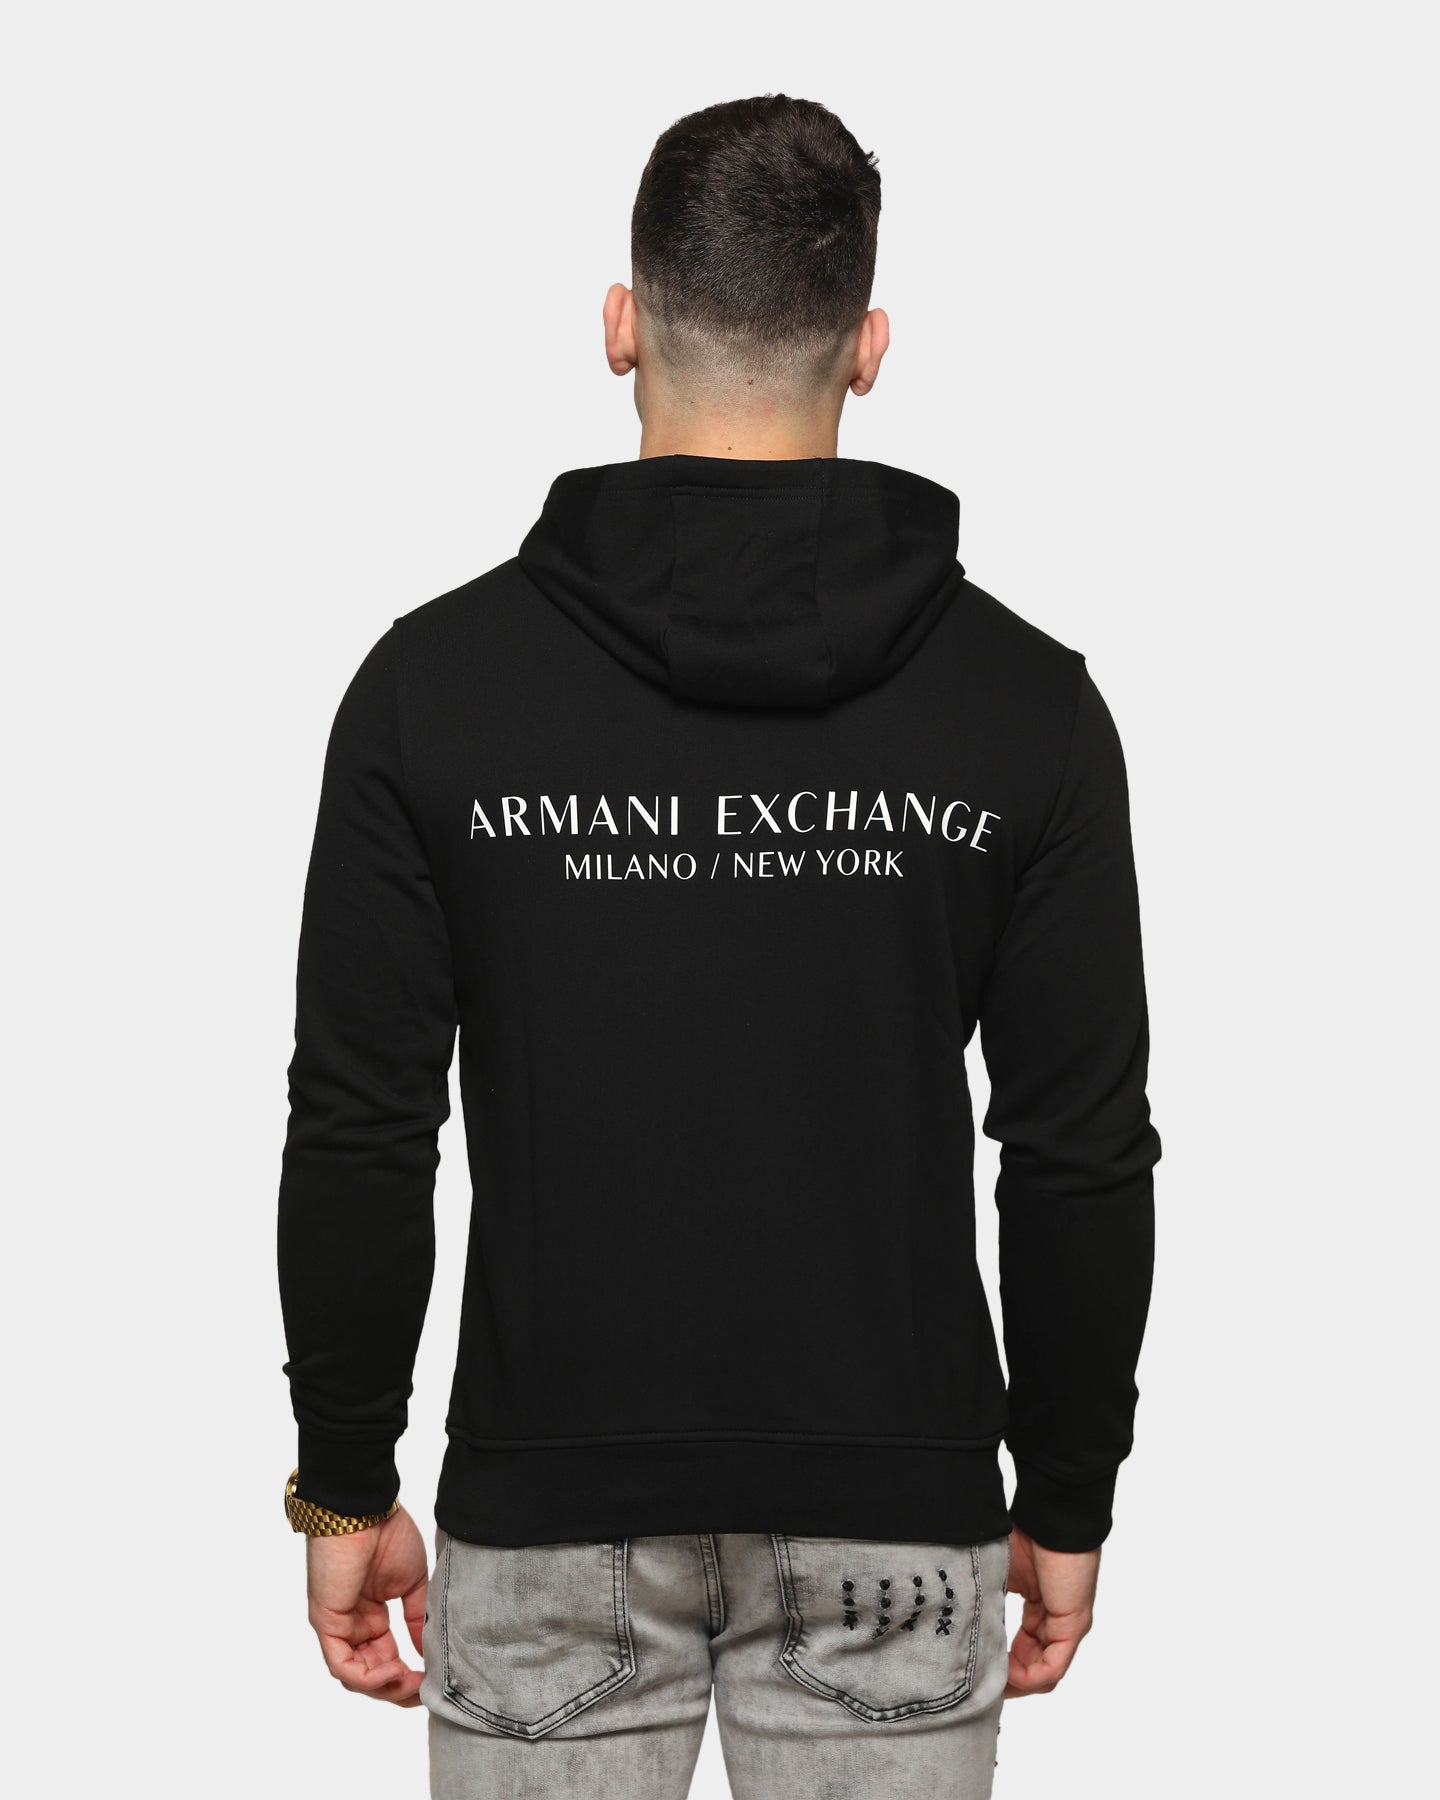 Armani Exchange 124 Sweatshirt Black 